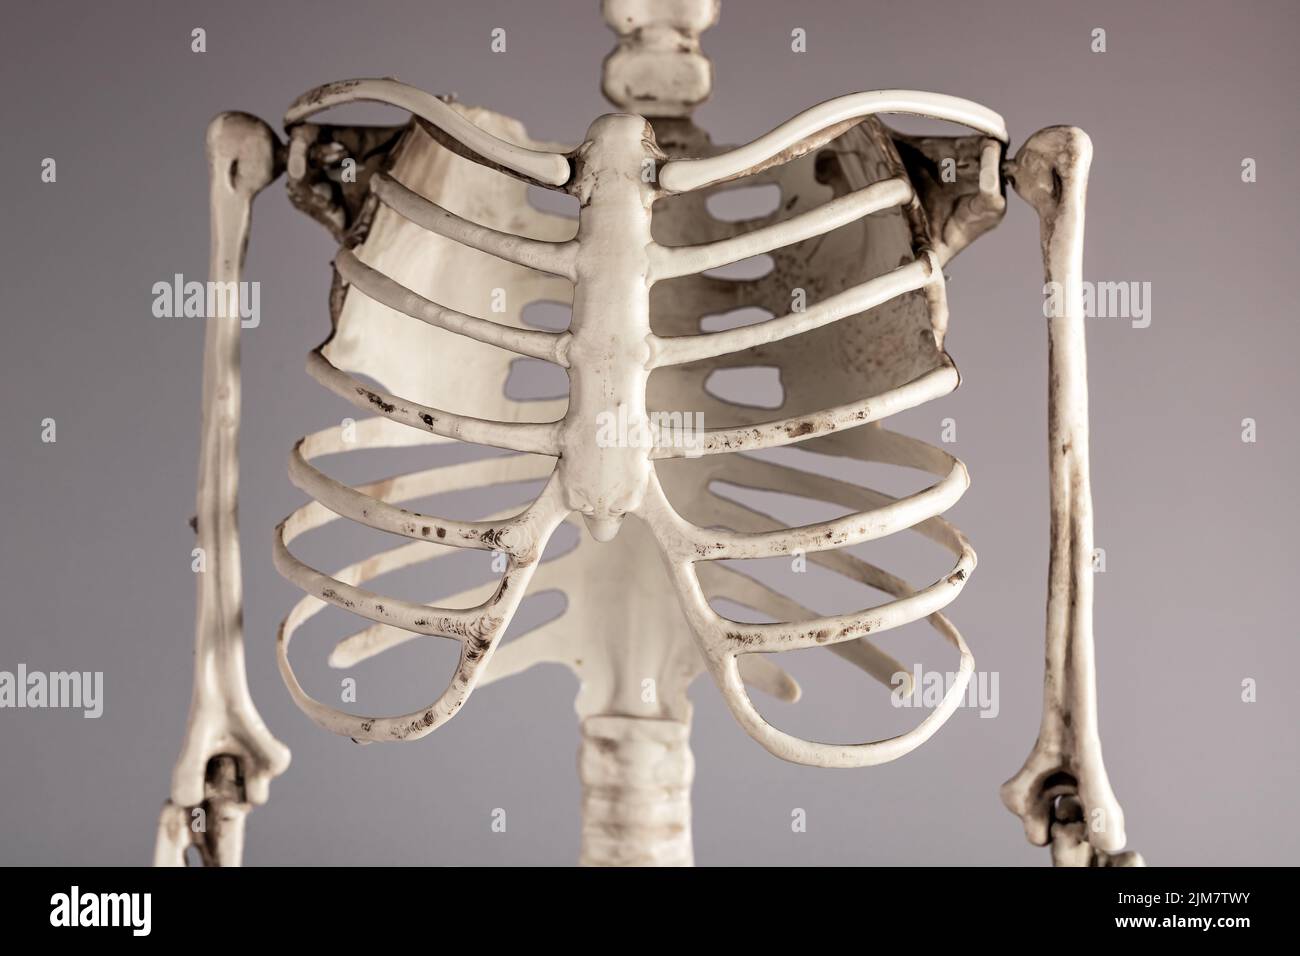 Human skeleton, rib cage, high angle view Stock Photo - Alamy